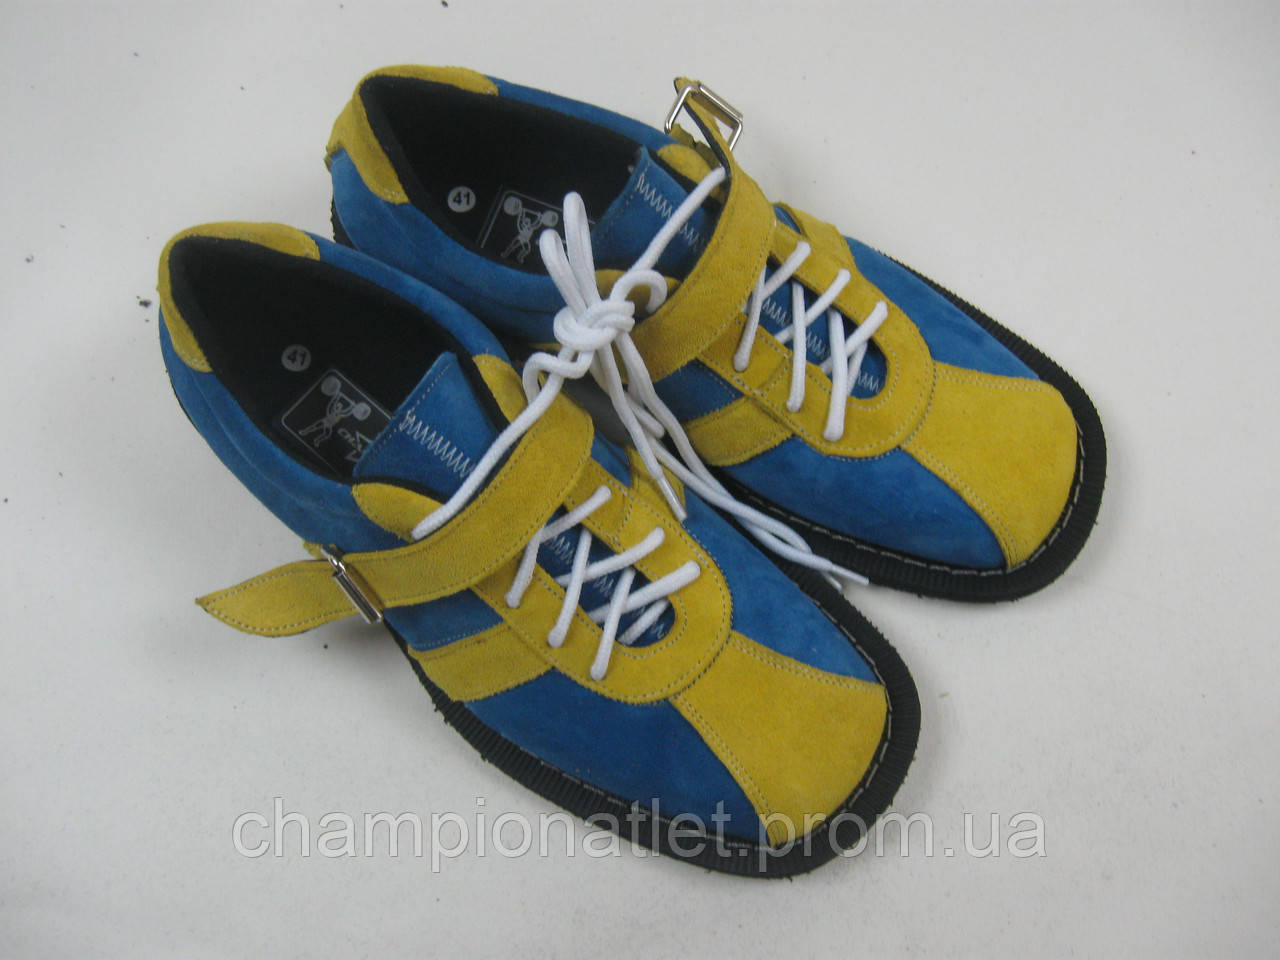 Штангети жовто-сині, замш.Для важкої атлетики.Виробництво — Україна.